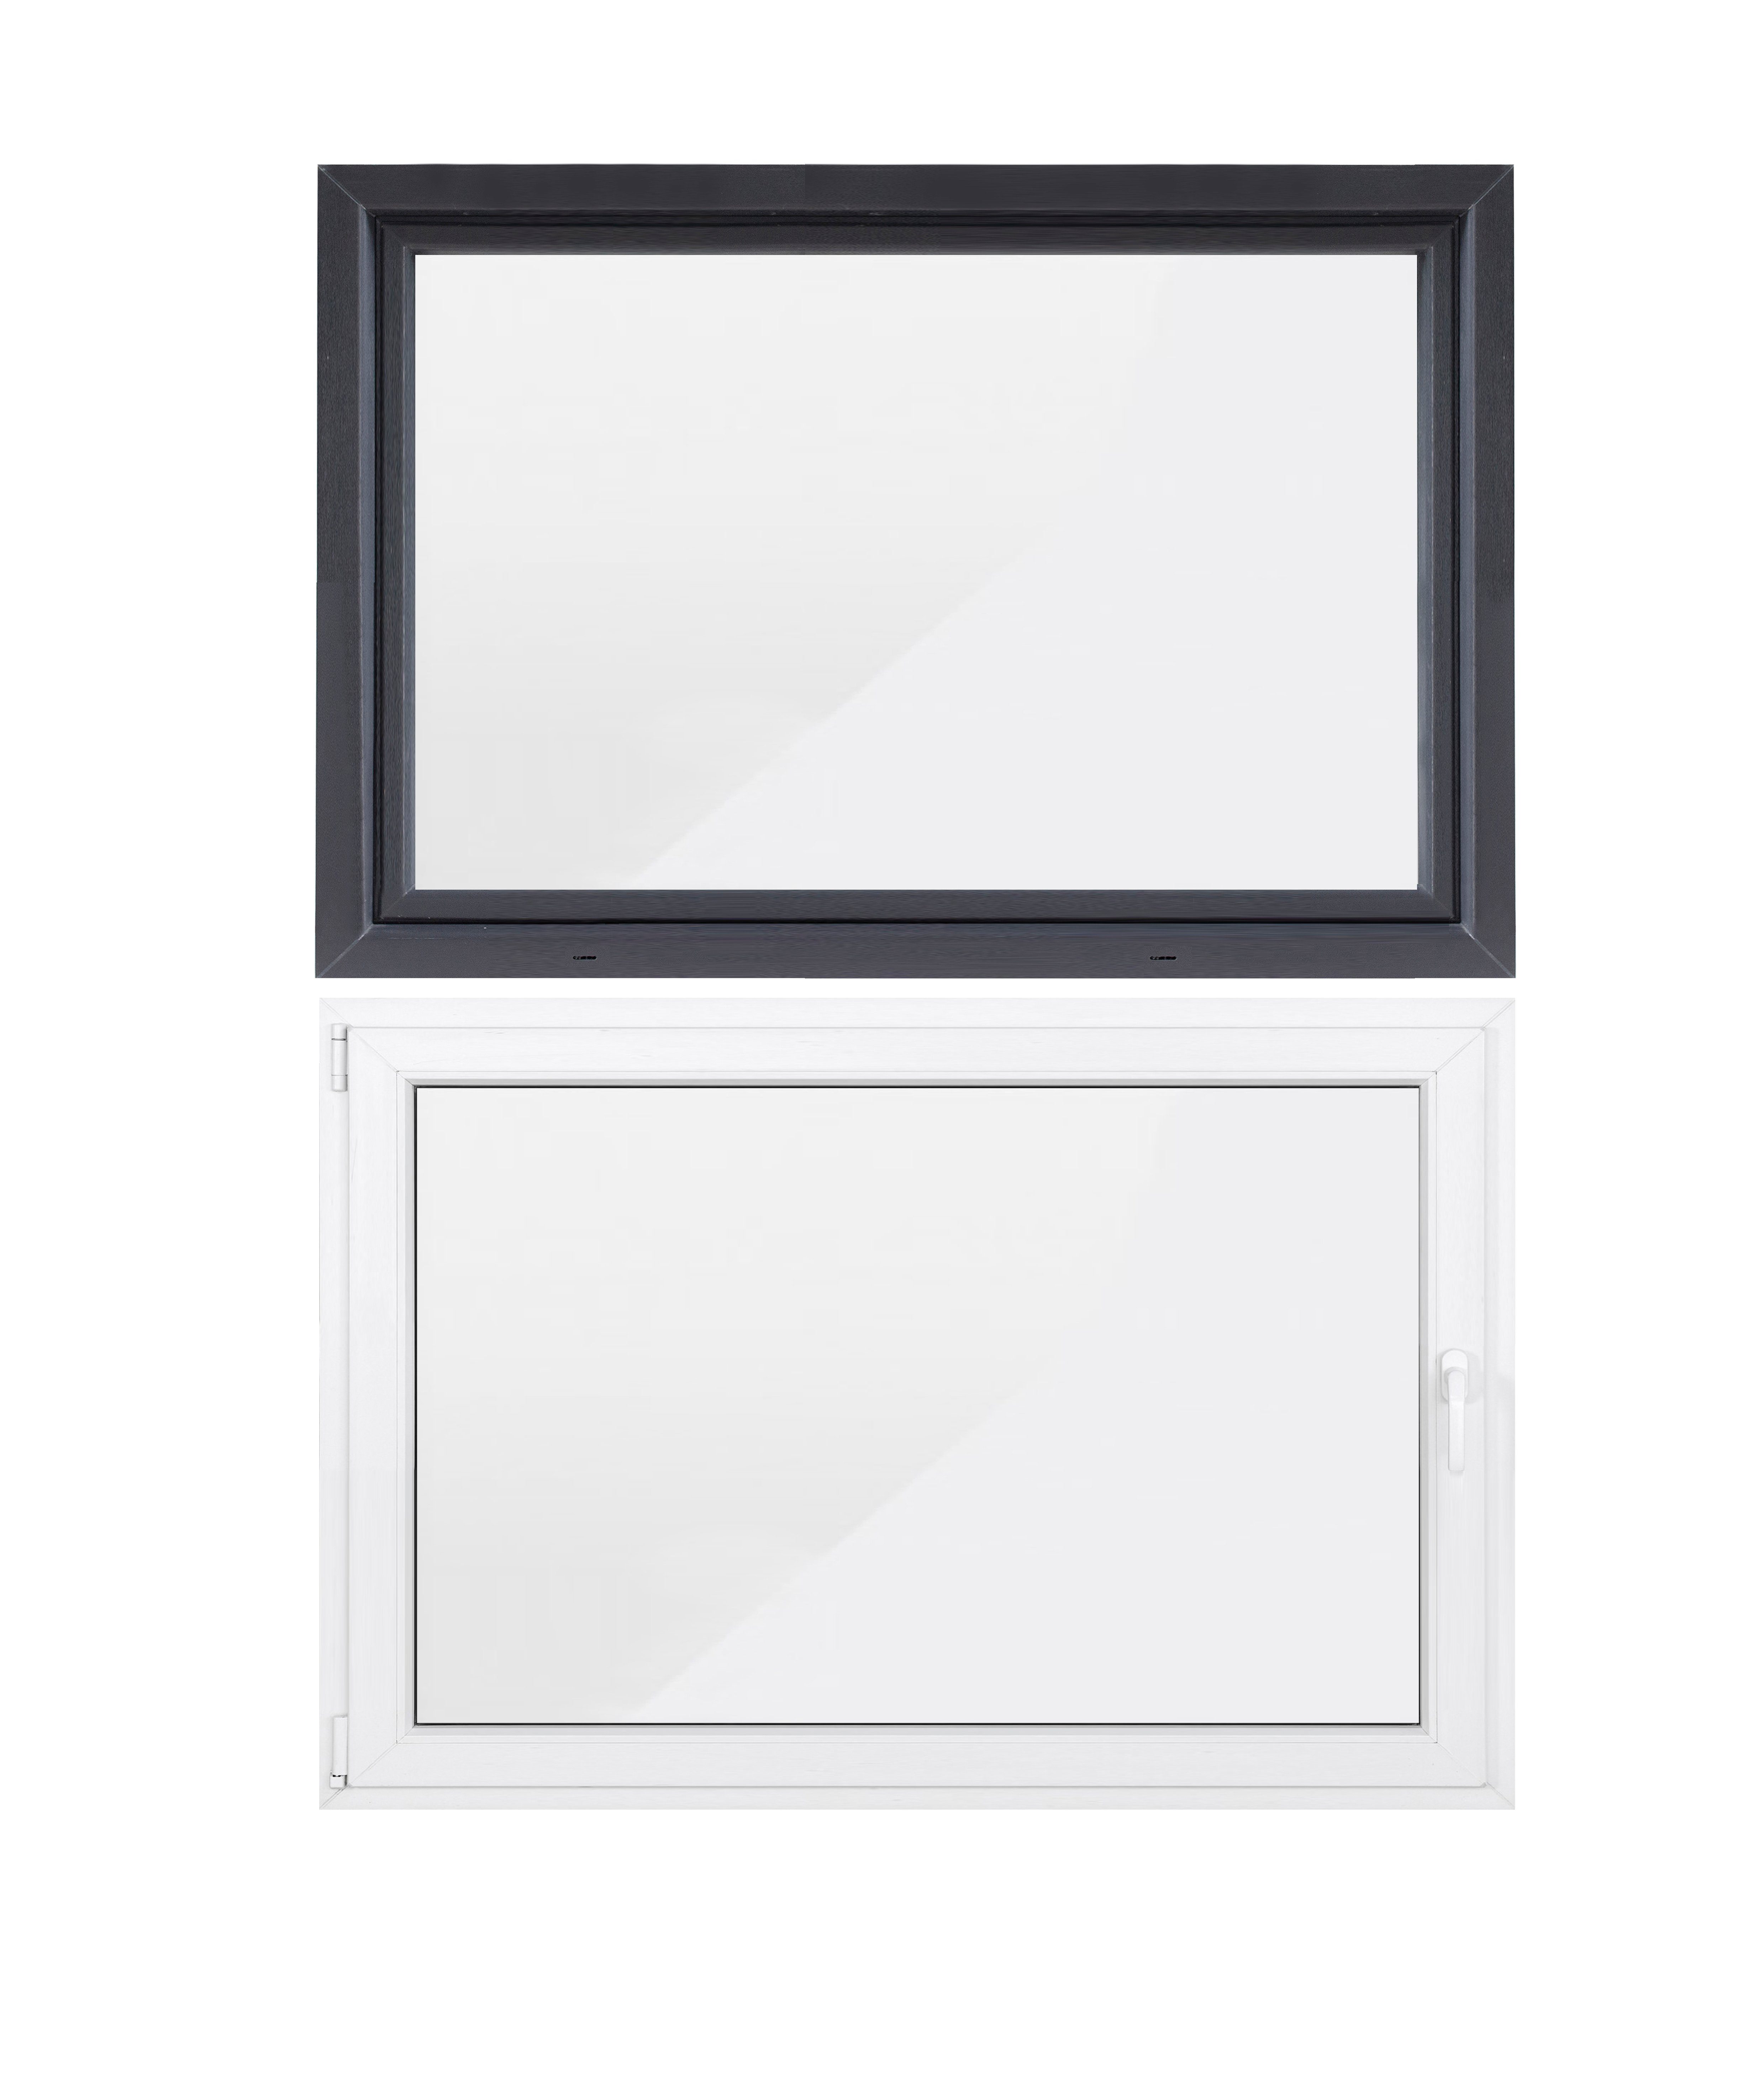 Kellerfenster Profil, SN 70 5-Kammer-Profil 800x400, weiß, Hochwertiges Sicherheitsbeschlag, RC2 GROUP mm (Set), Flügel, außen 1 anthrazit/innen DECO